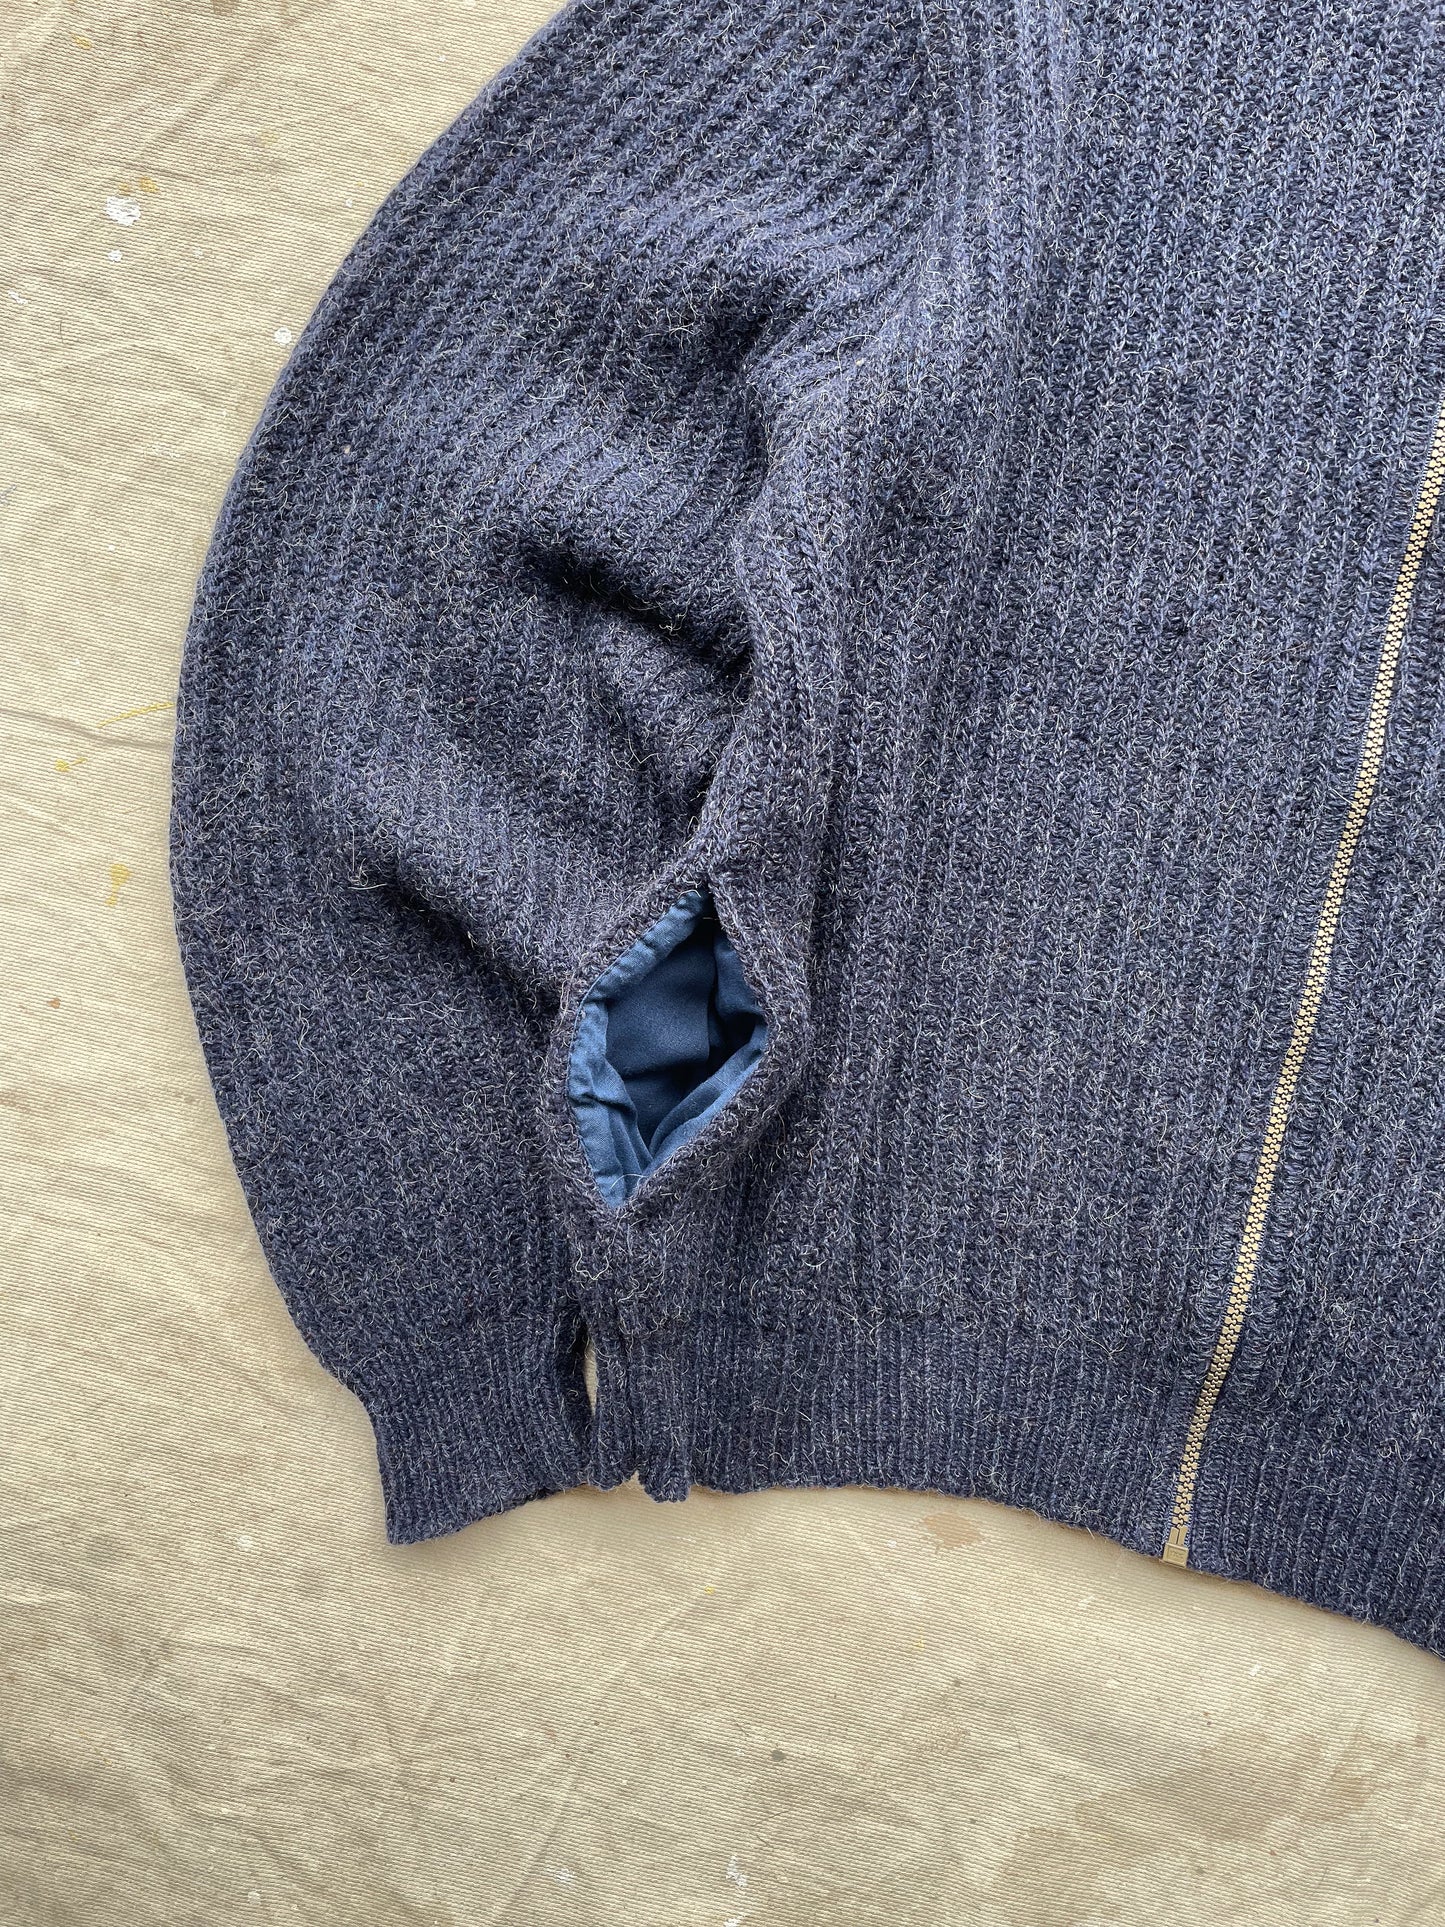 L.L. Bean Alpaca Blend Zip Sweater—[M]